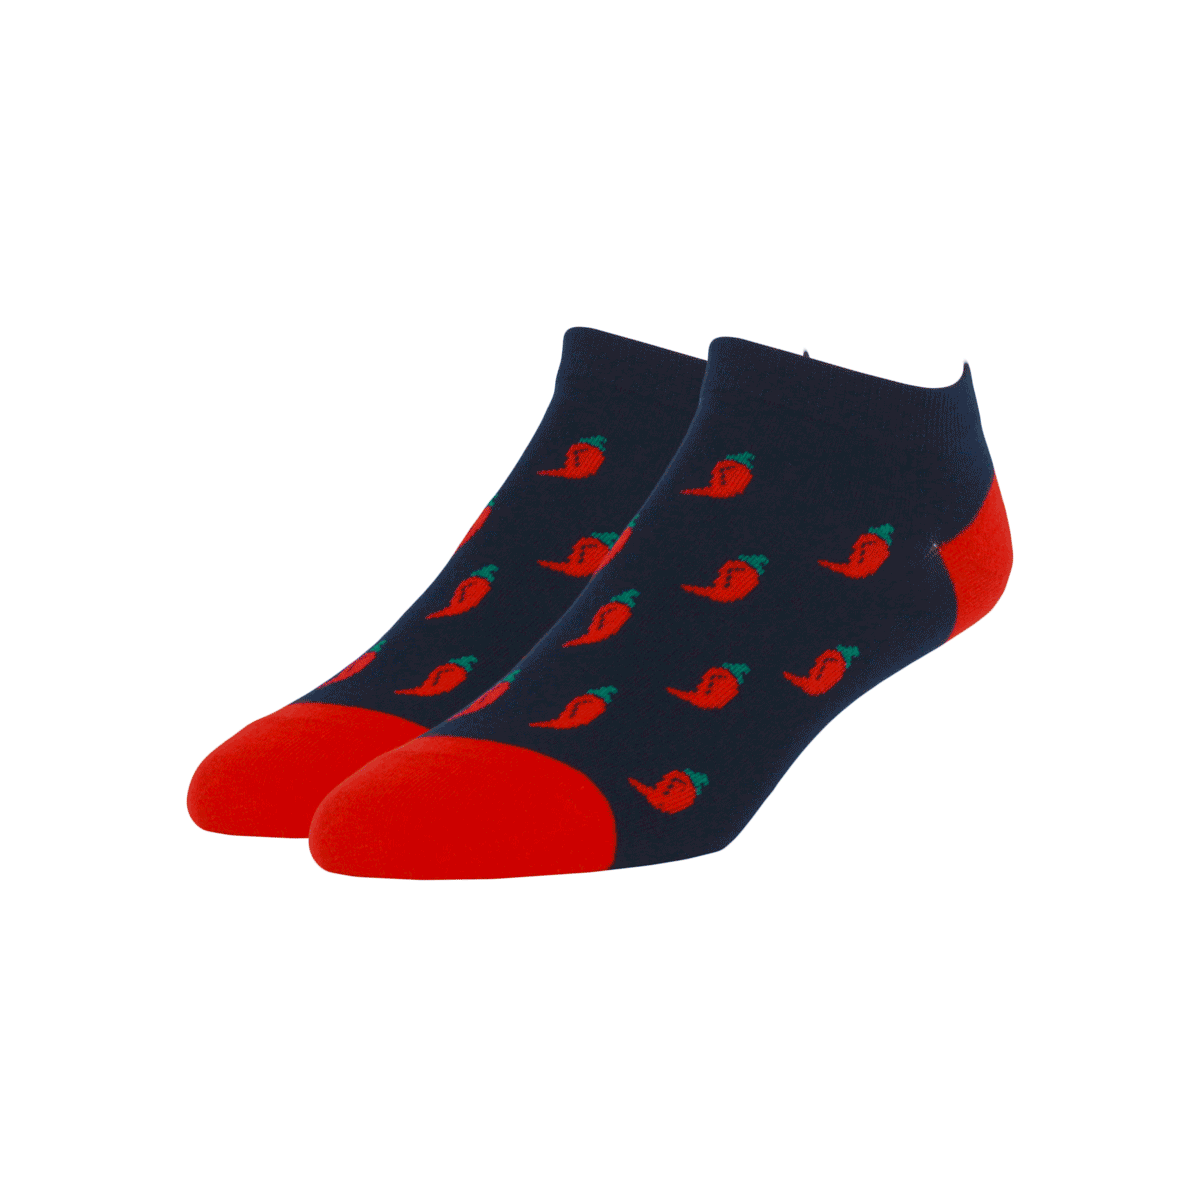 Custom Ankle Socks